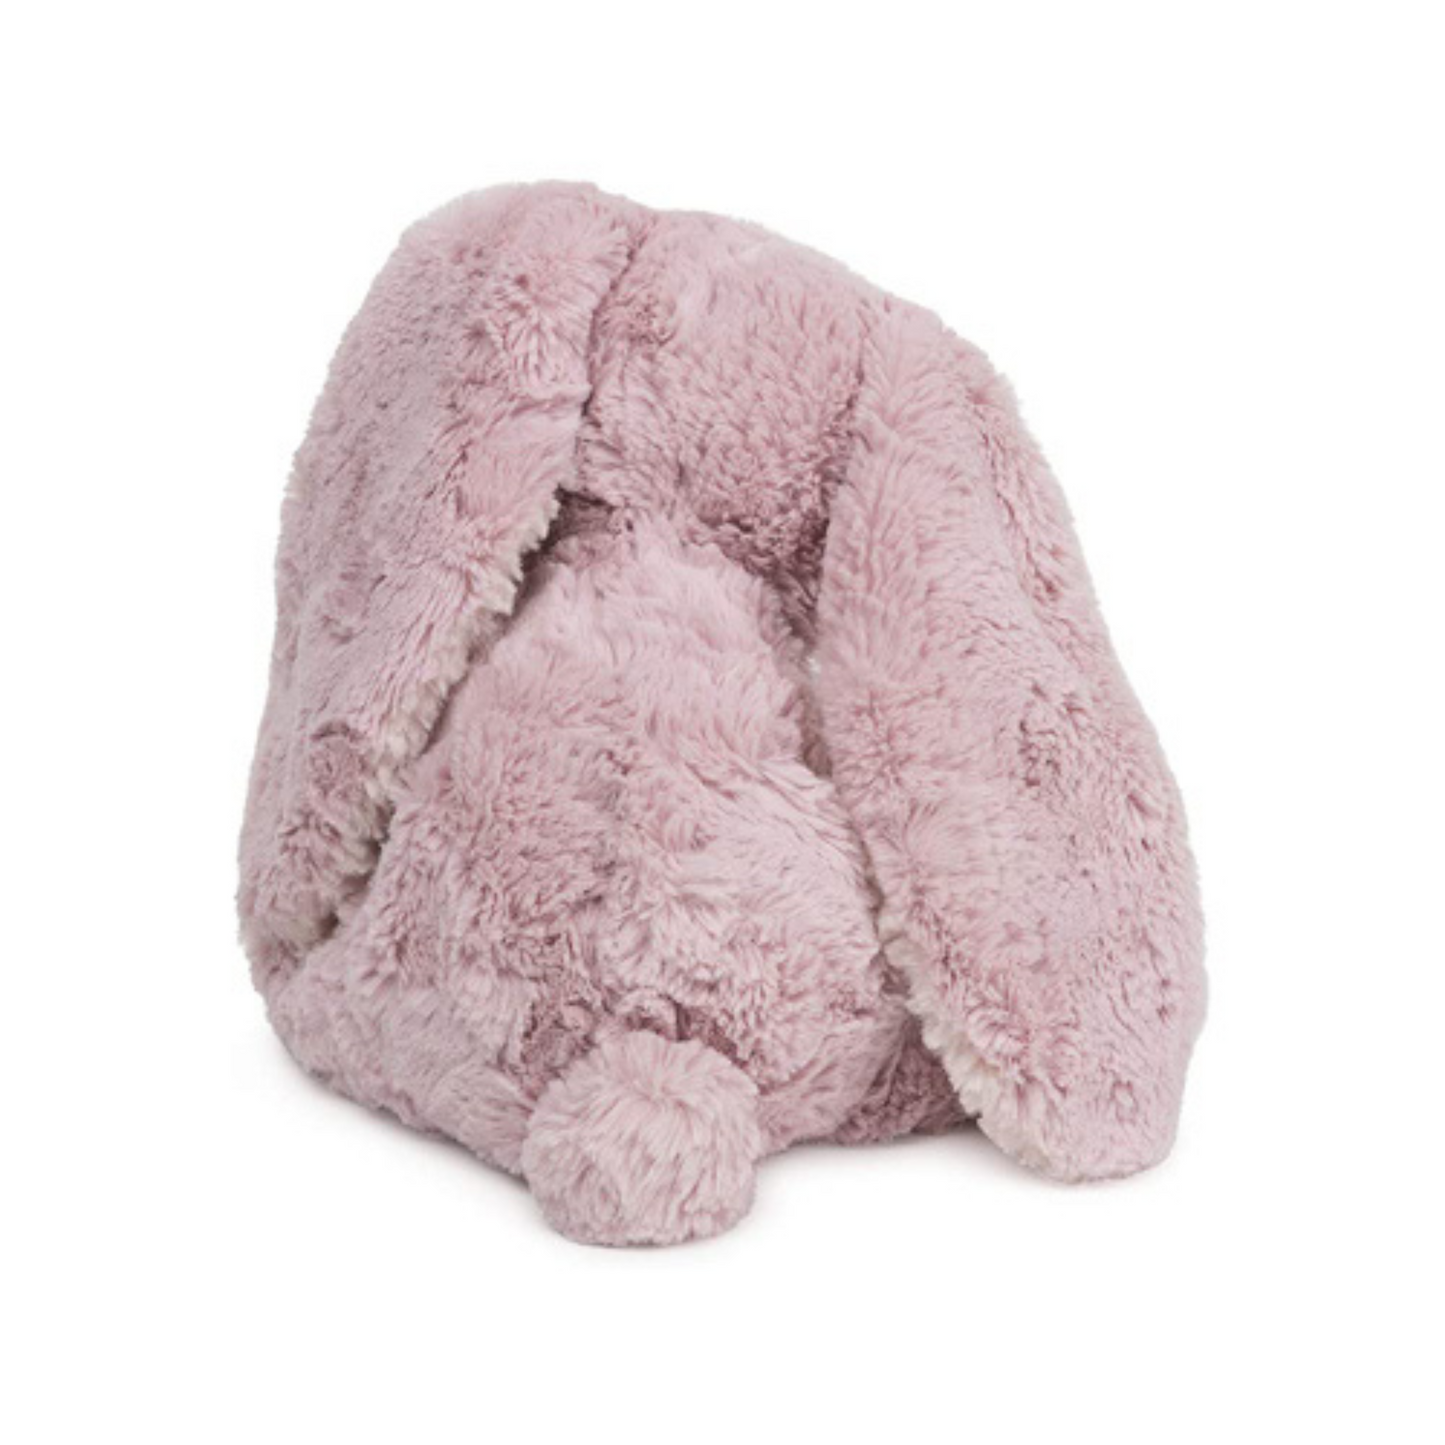 Personalized Bunny Soft Toy - 10" Gund Cozys Bunny